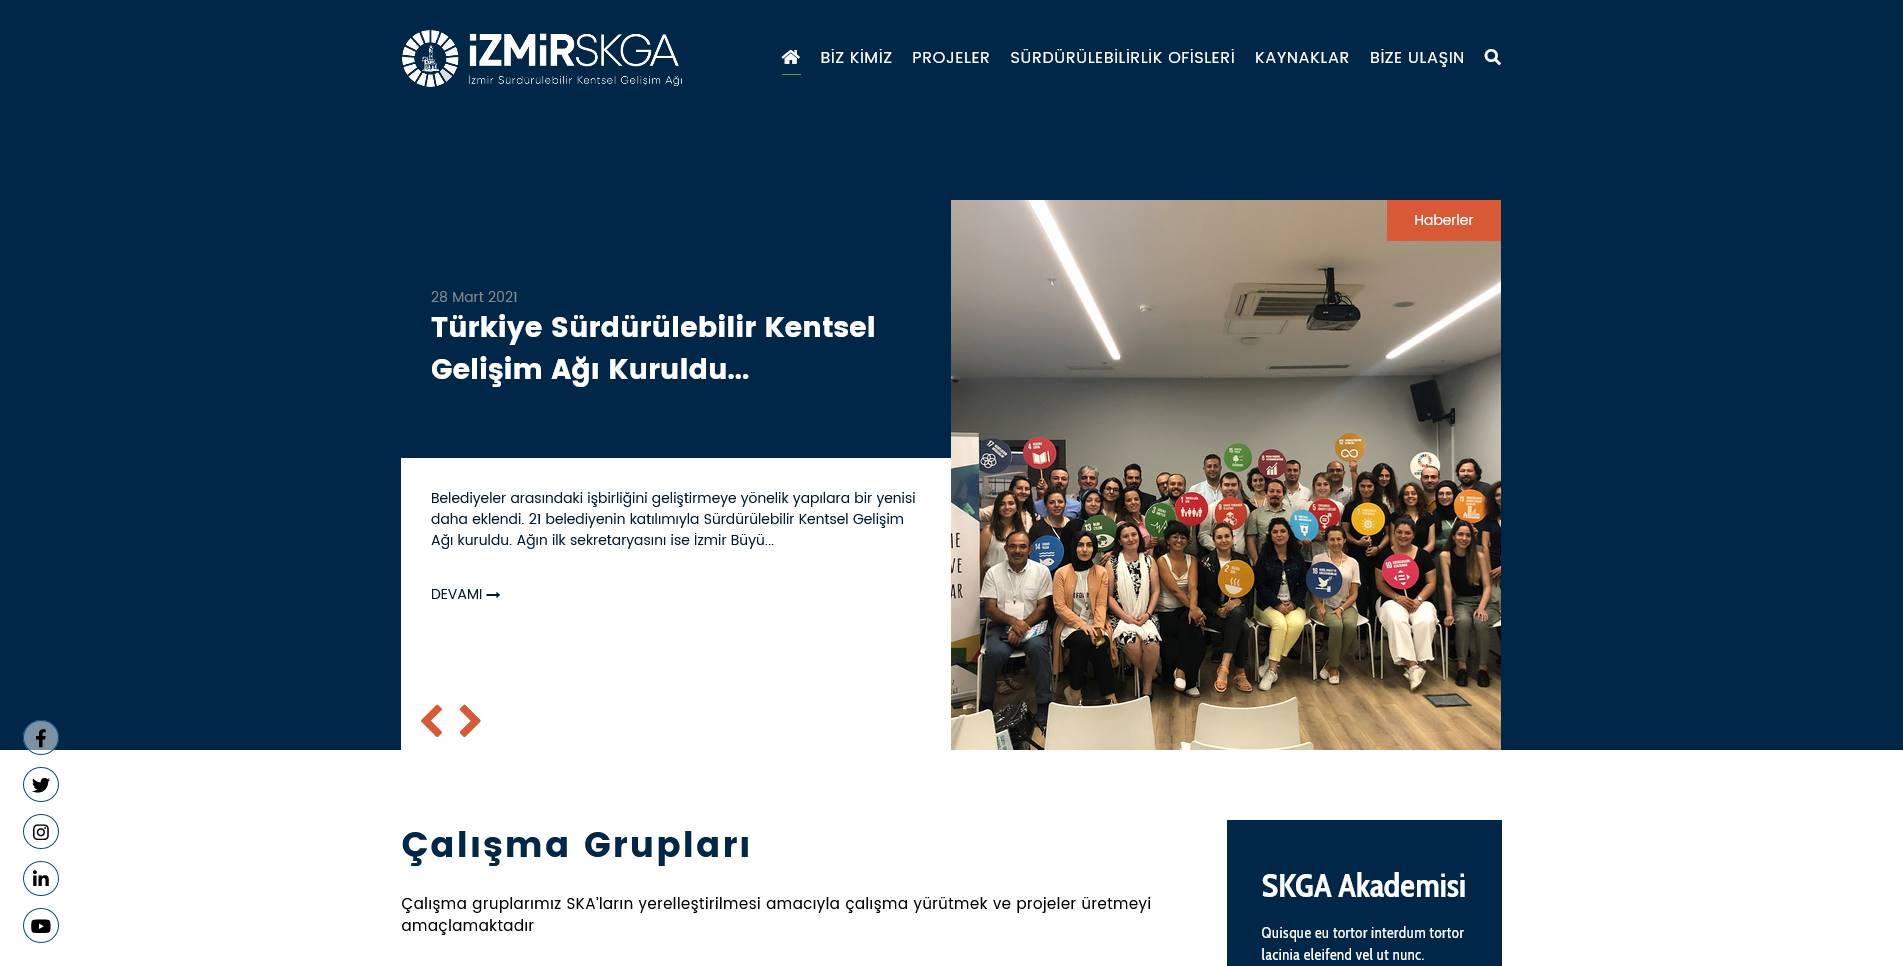 İzmir Skga Stk web site tasarımı örneği